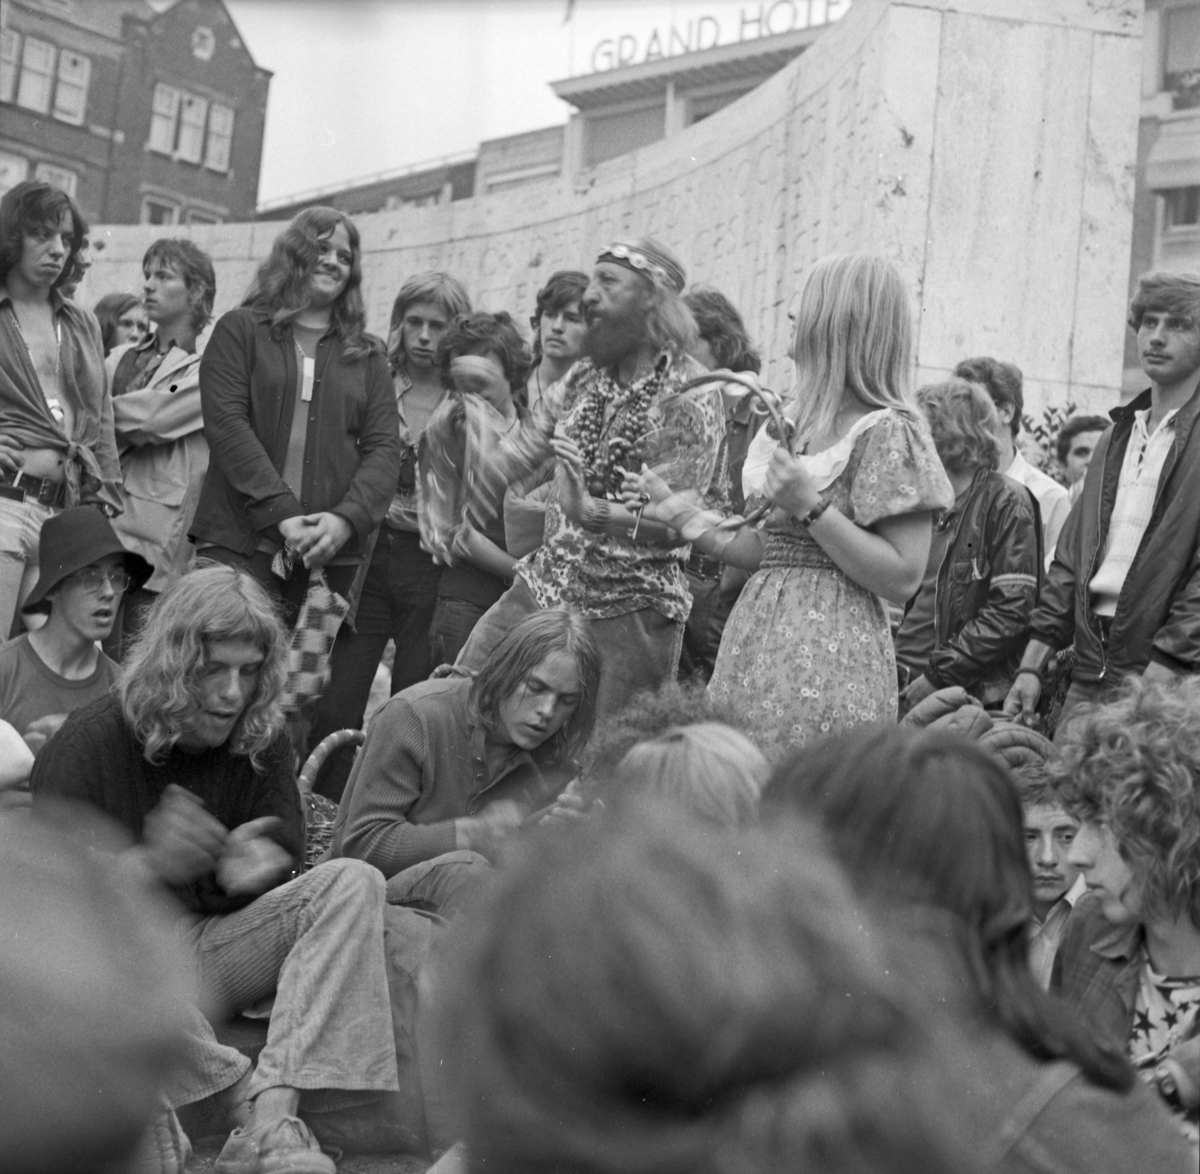 En gjeng som er samlet og spiller og synger på en åpen plass i sentrum av en by. Muligens Amsterdam.